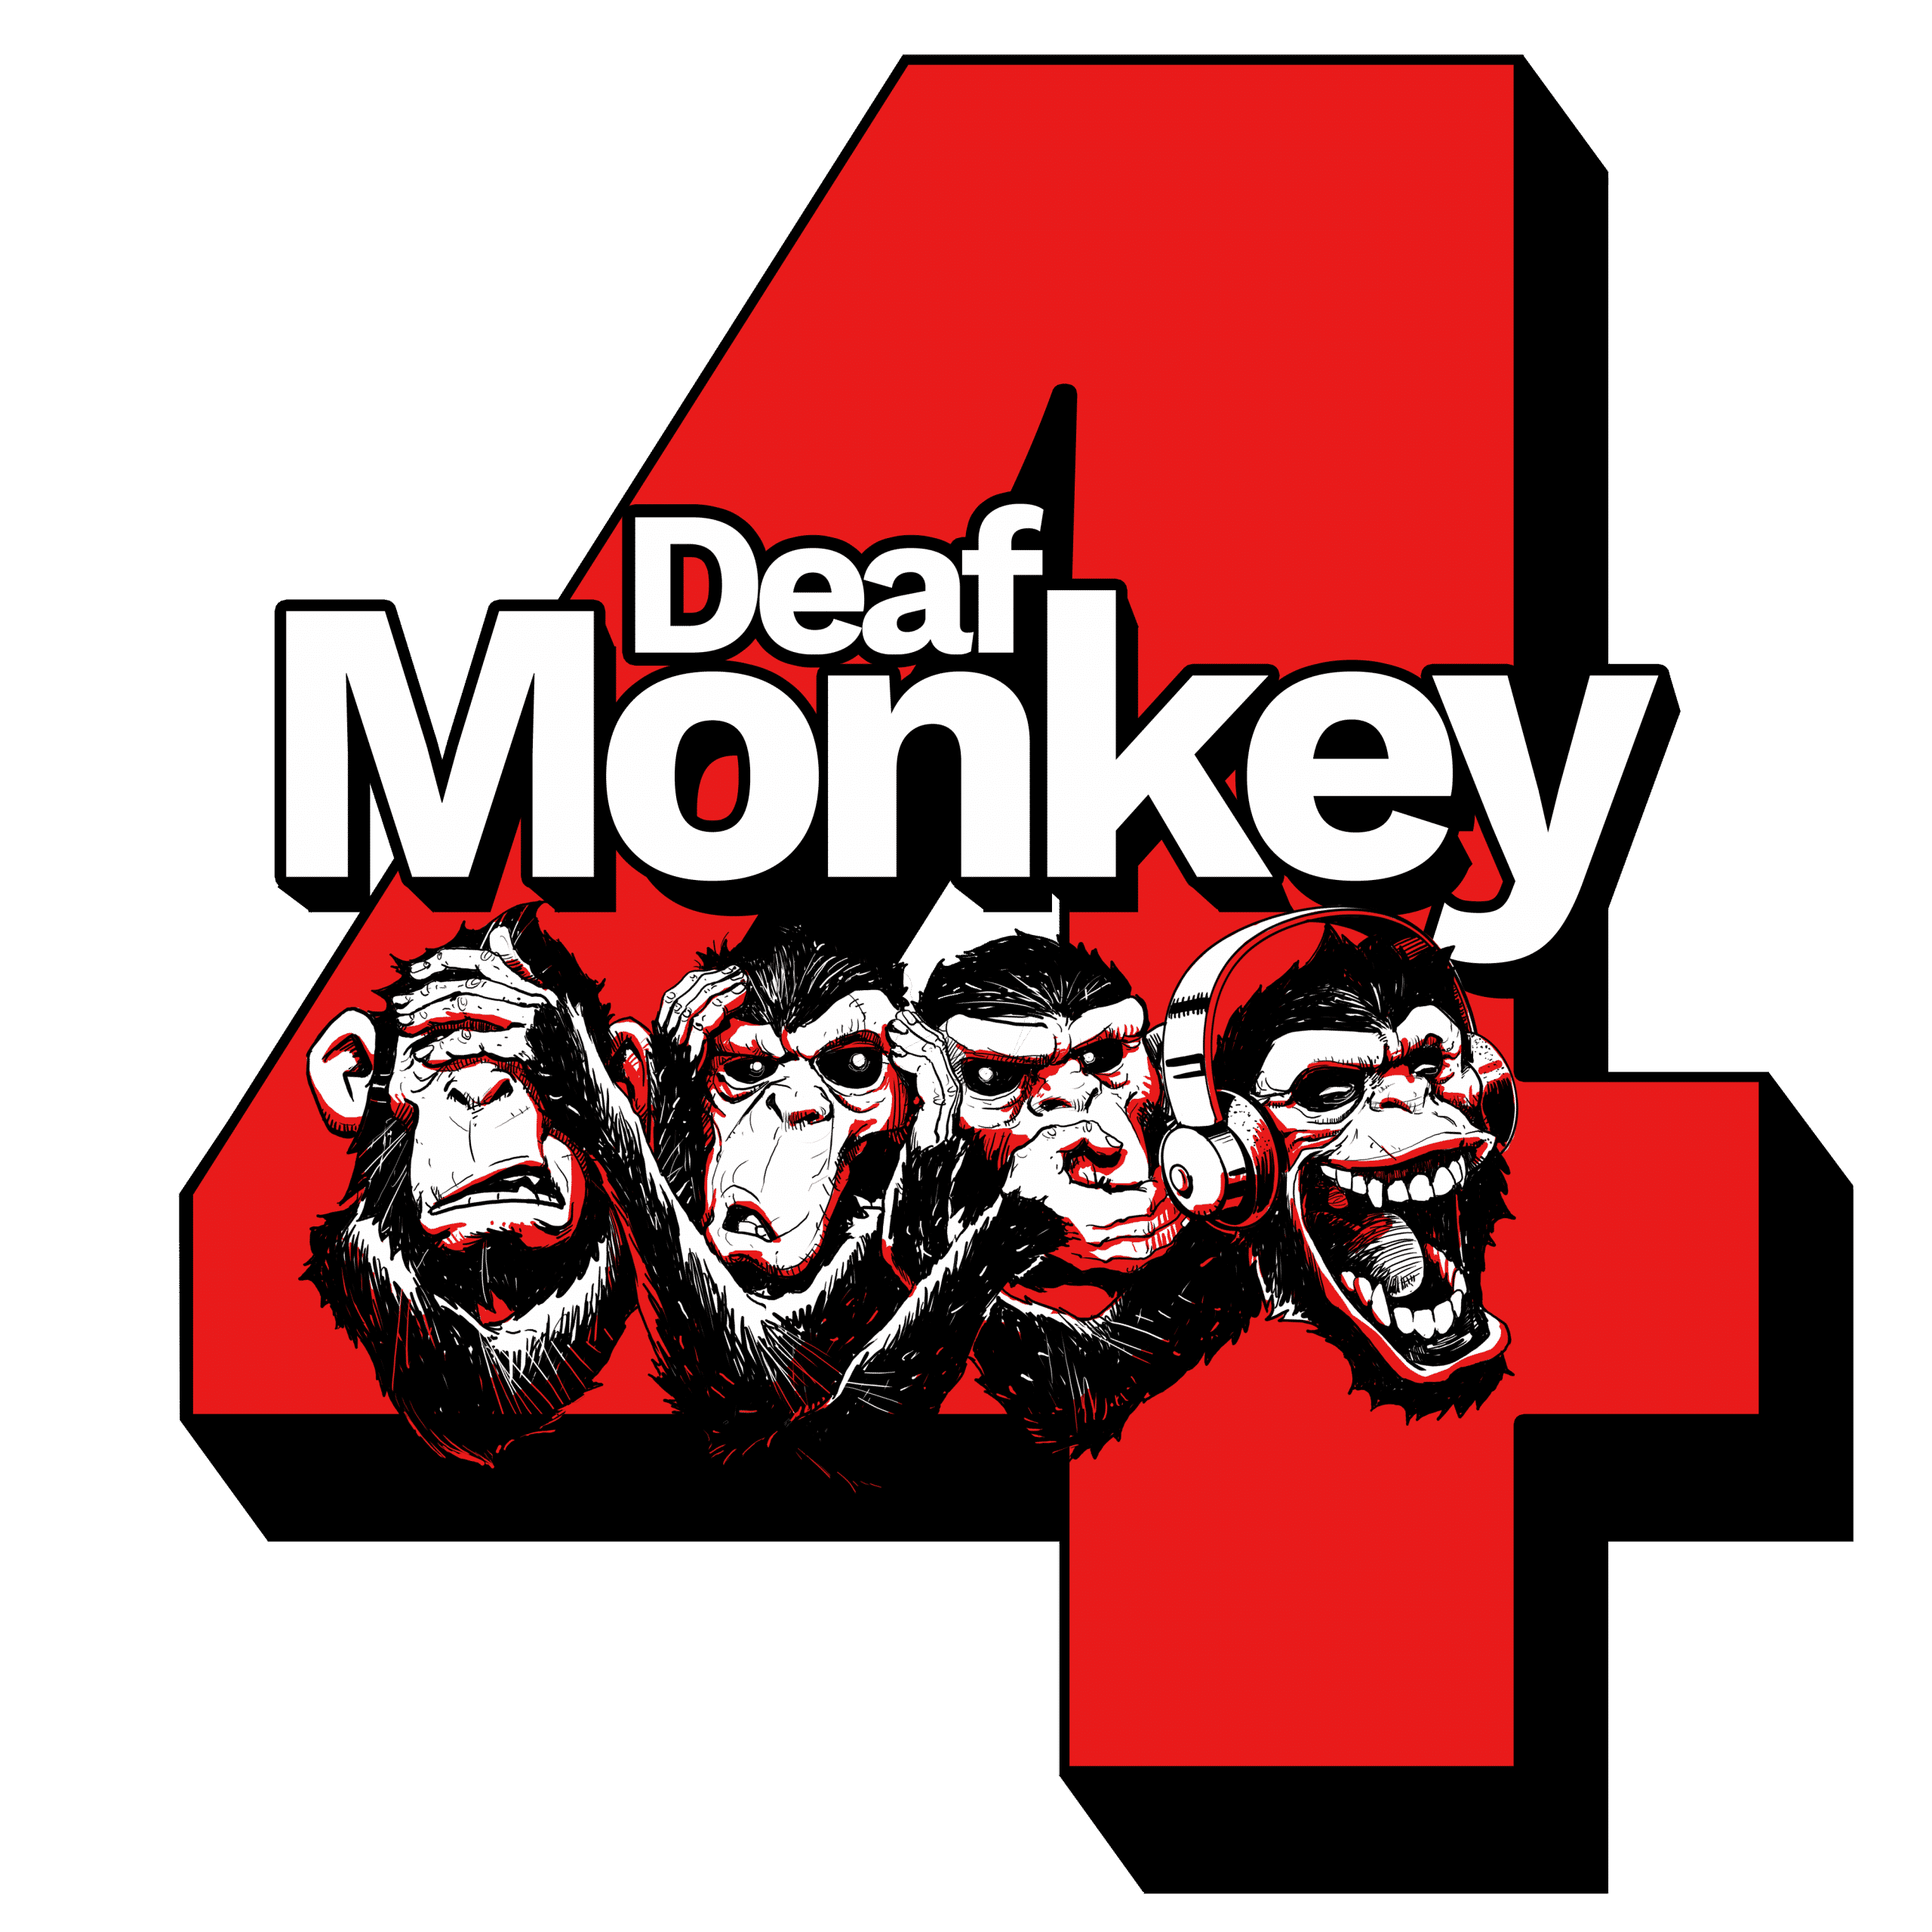 Deaf Monkey 4